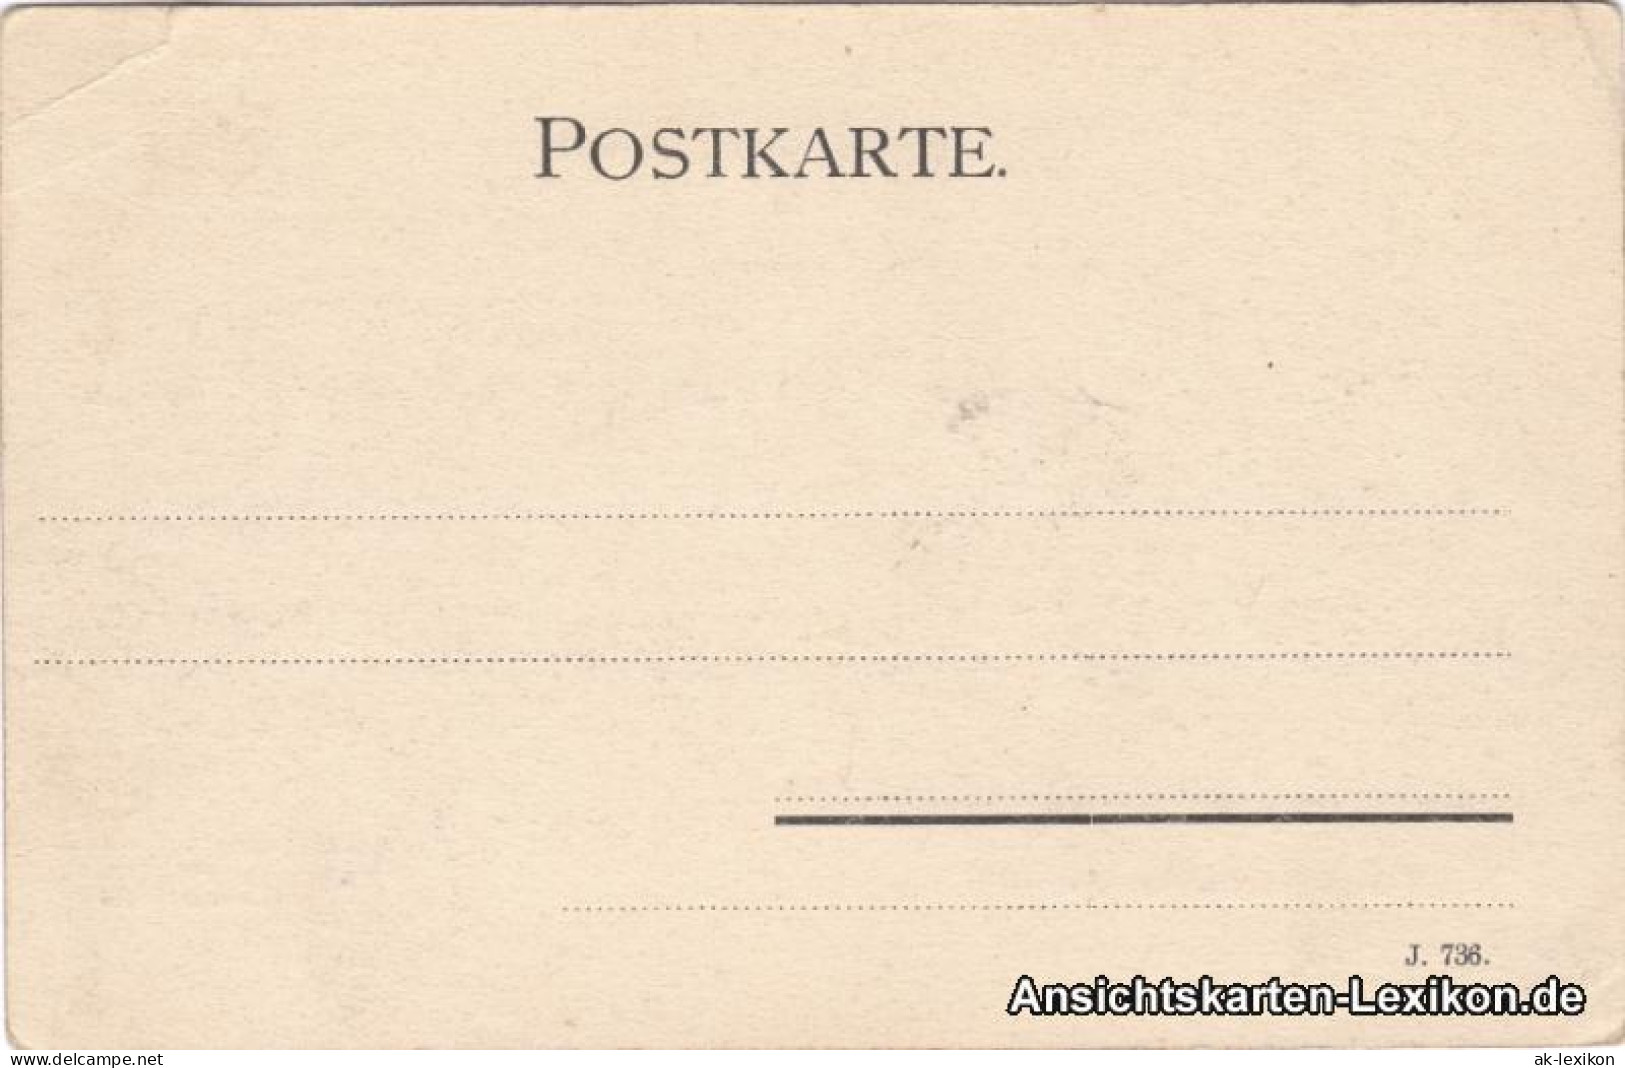 Ansichtskarte Zittau Untere Neustadt Mit Marstall 1906  - Zittau